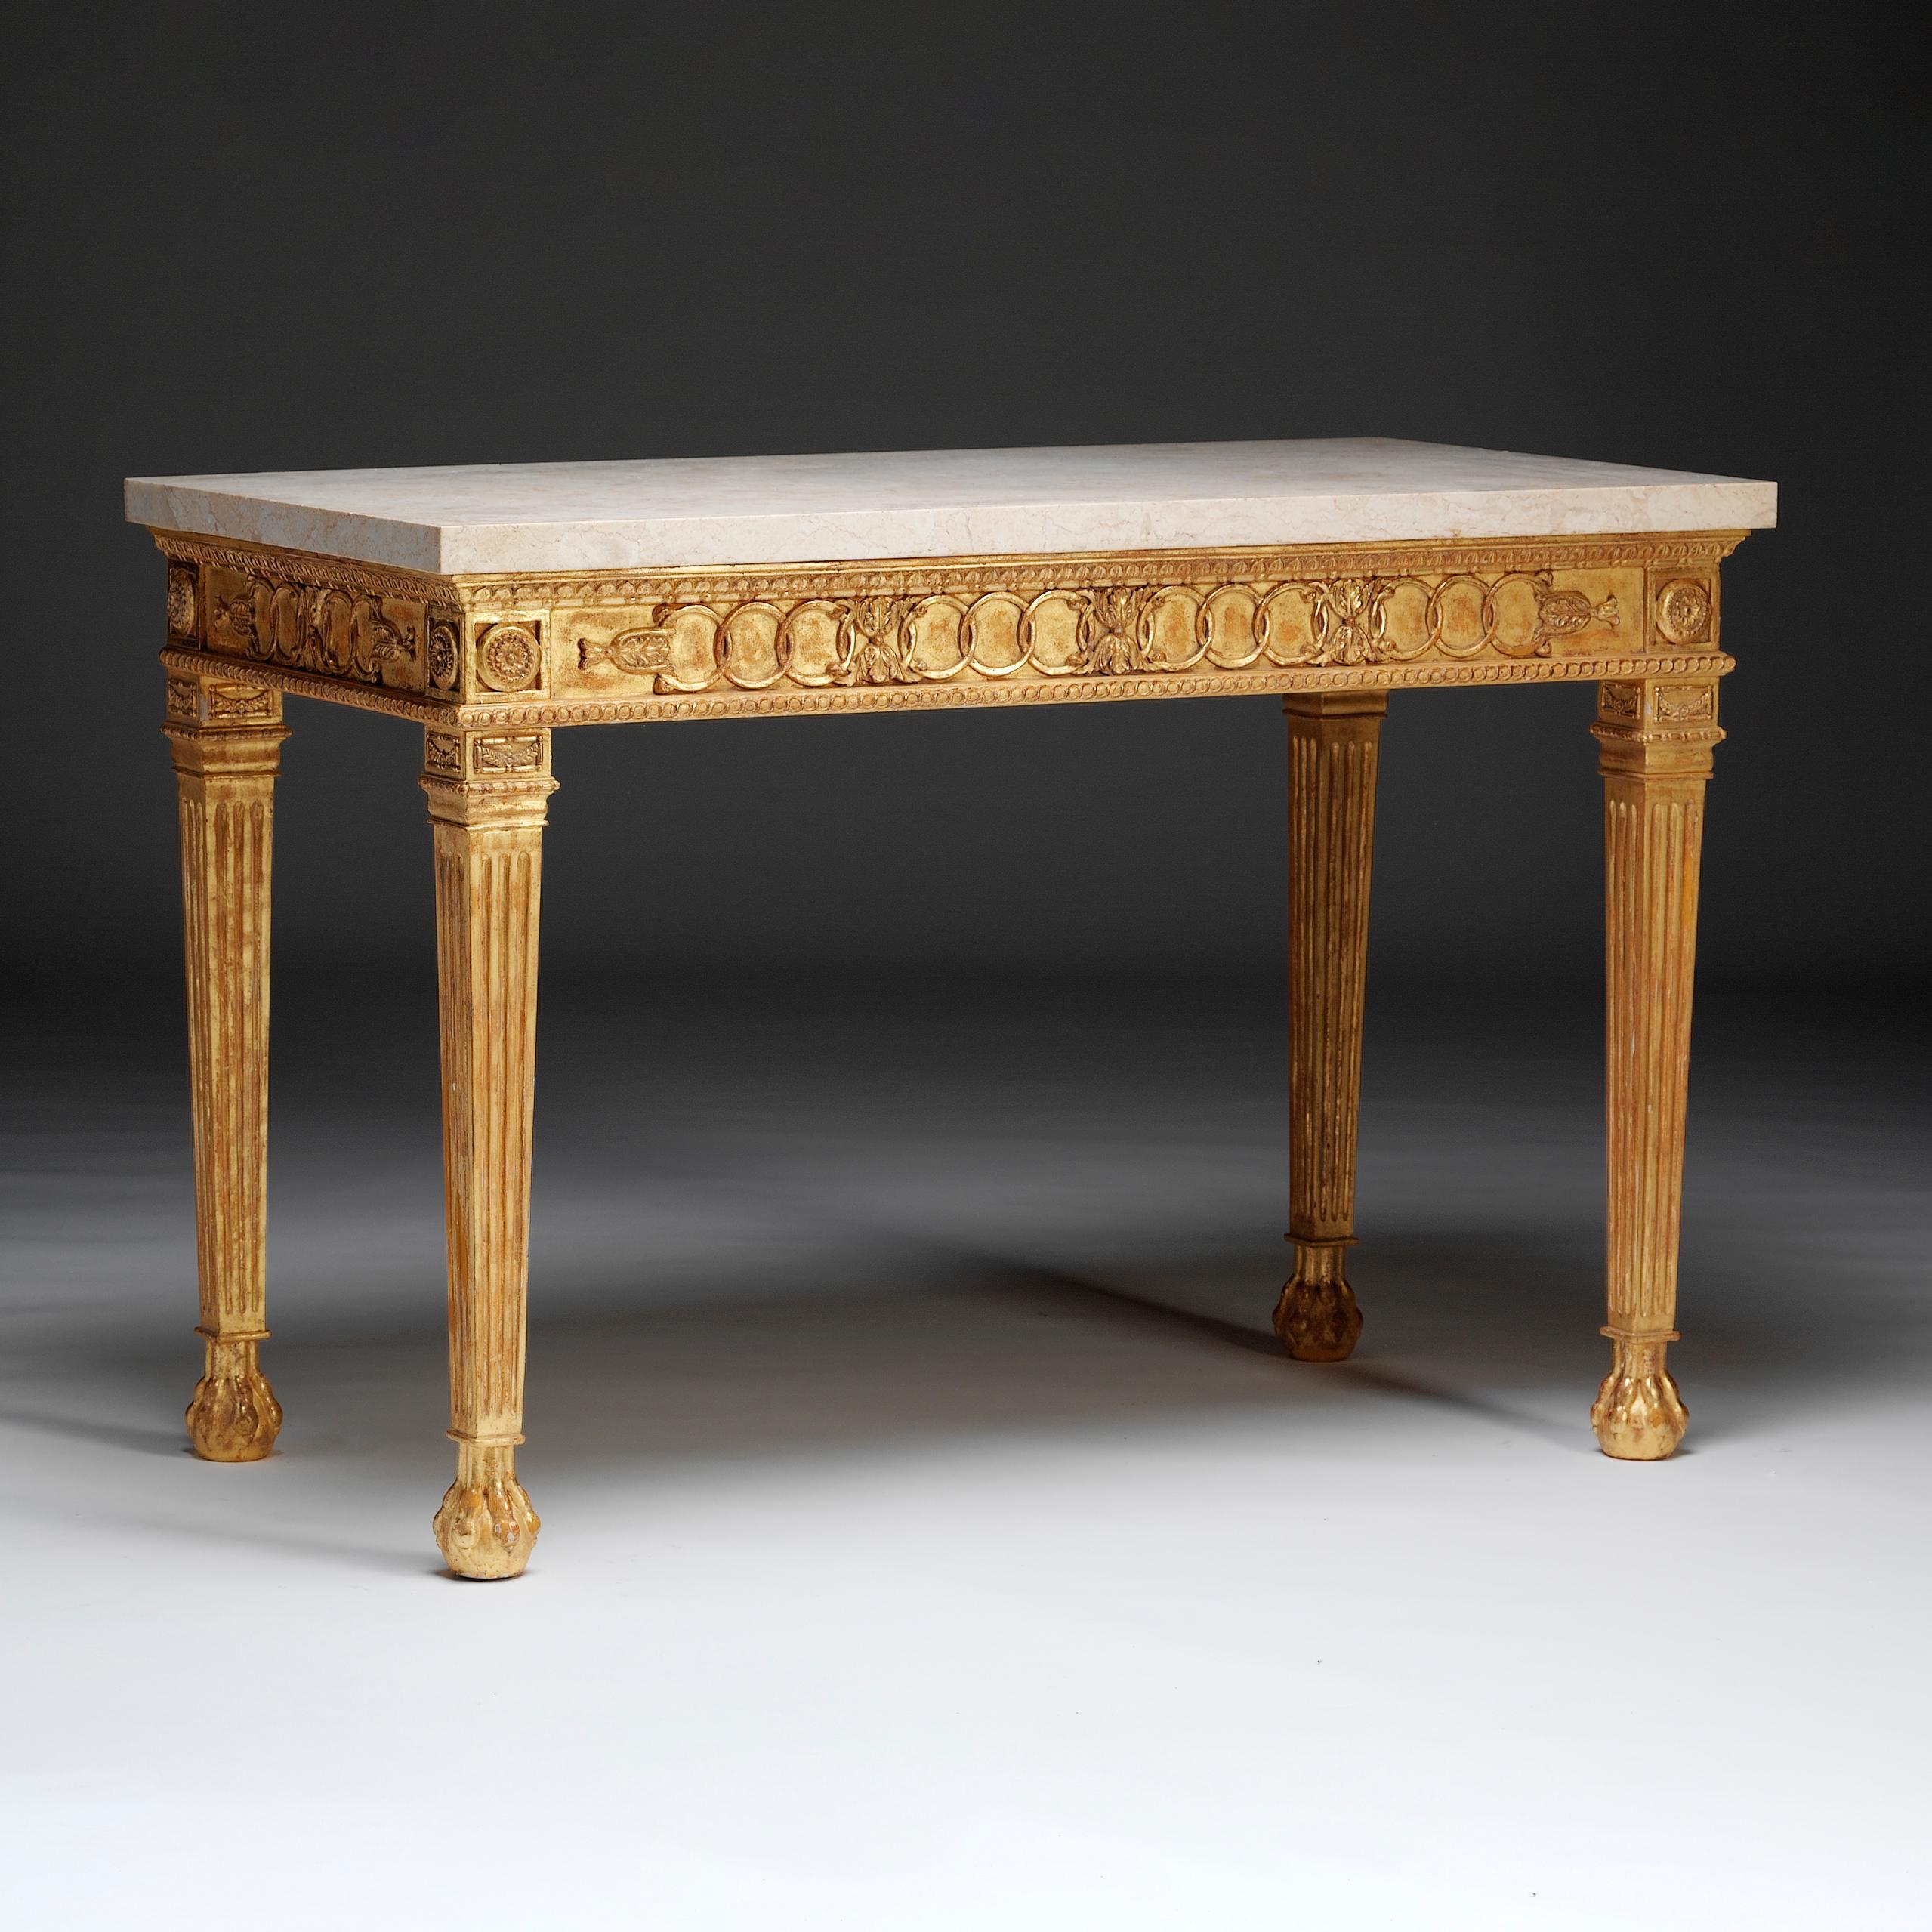 Neoklassizistischer Tisch aus vergoldetem Holz mit Marmorplatte über einem getäfelten Fries, der mit ineinander verschlungenen Kreisen verziert ist, die von geschnitzten Blättern durchbrochen werden, die durch Leisten getrennt sind. Die